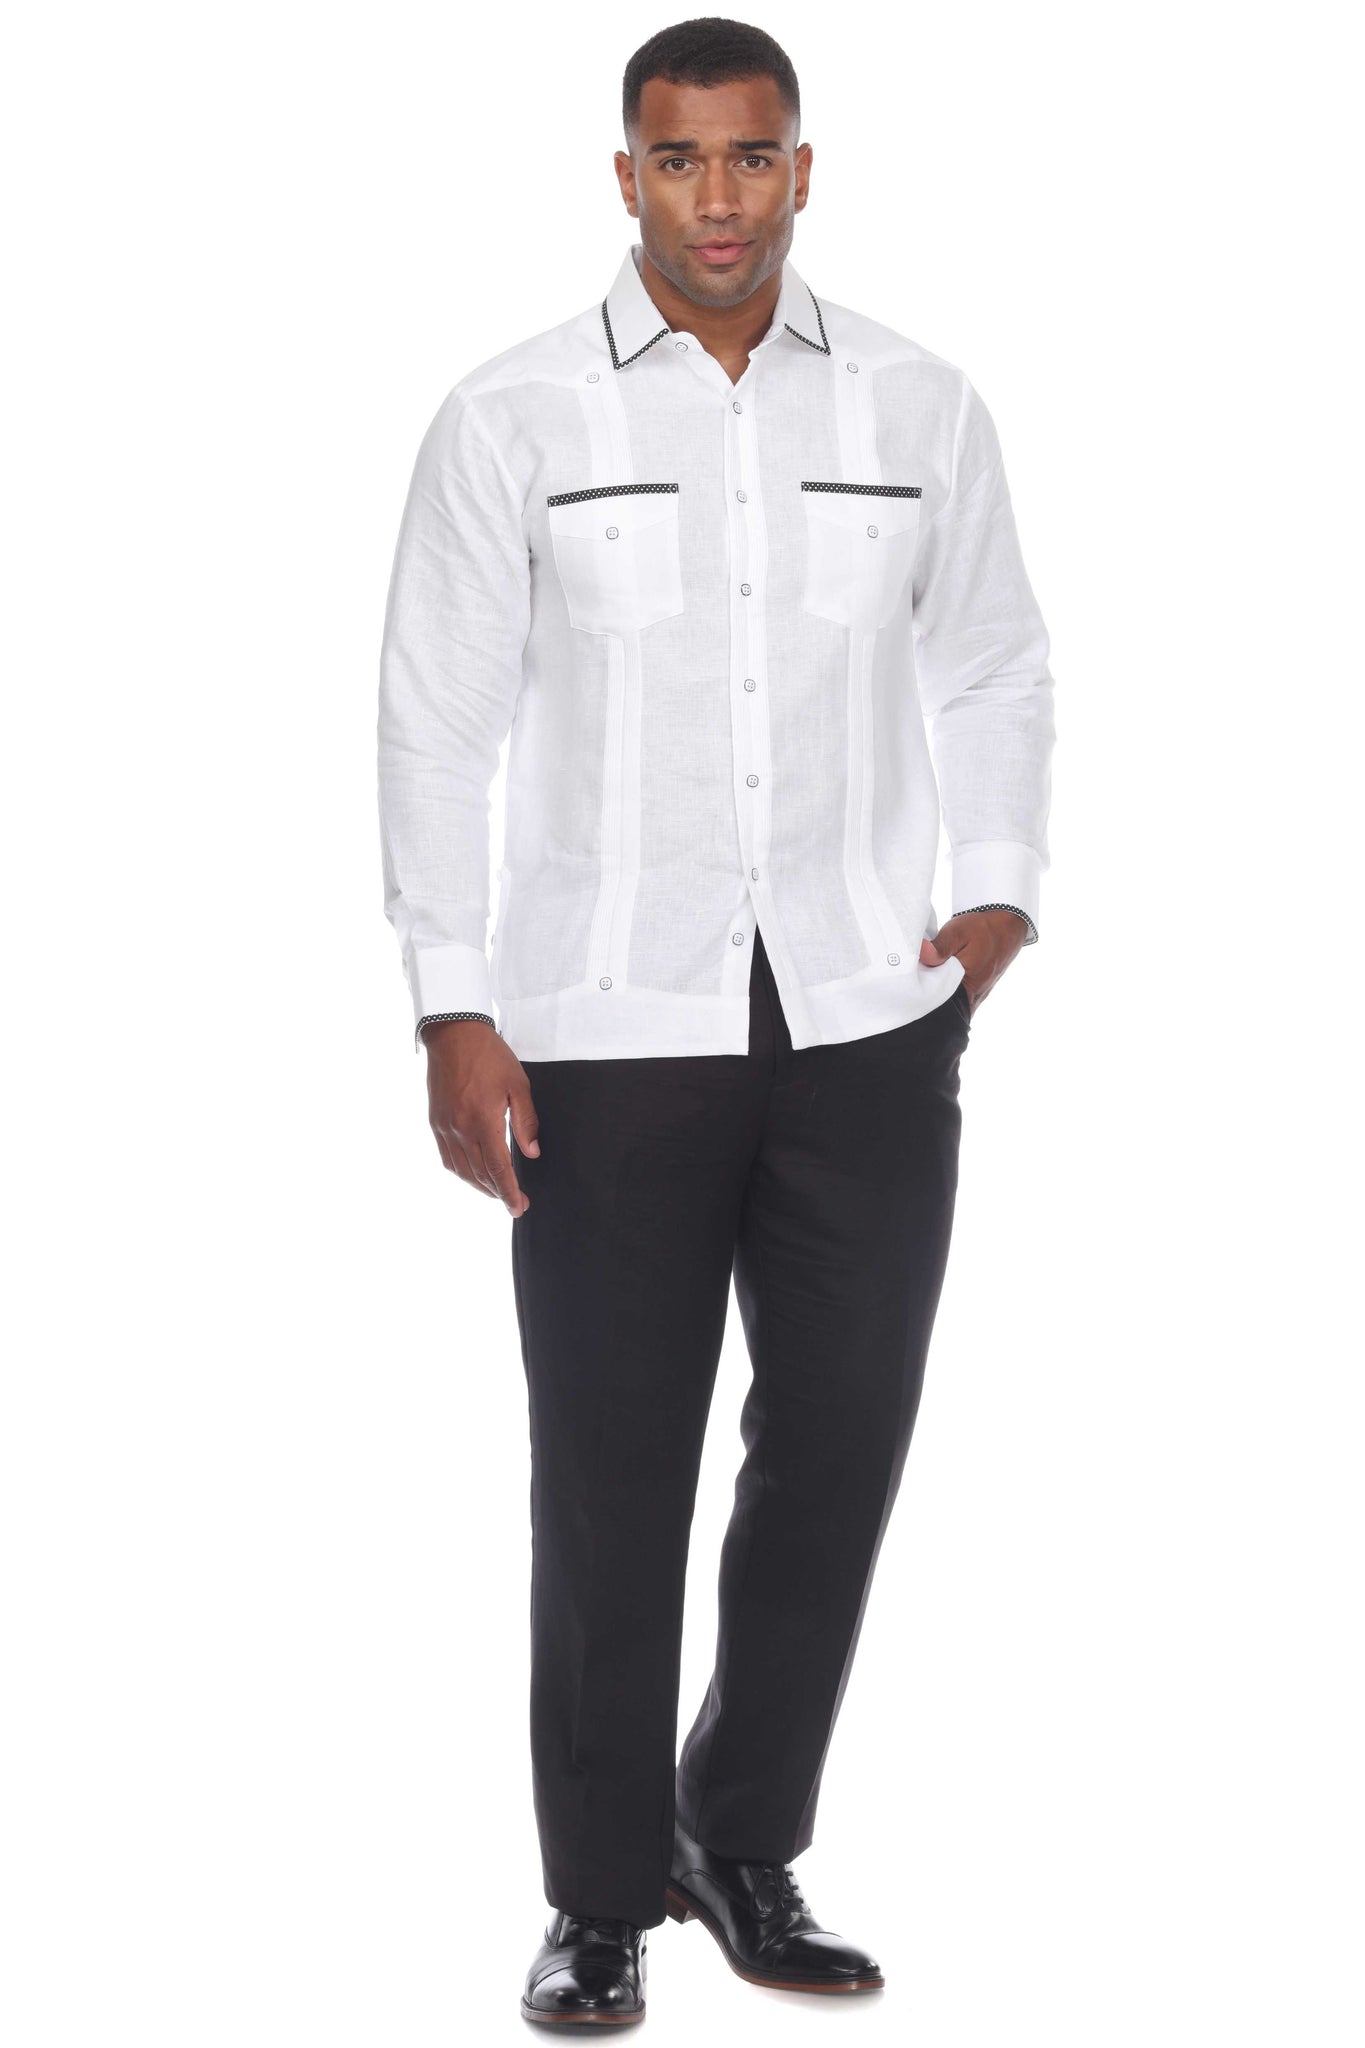 Mojito Men's Guayabera Shirt Long Sleeve 100% Linen with Stylish Polka Dot Print Trim - Mojito Collection - Guayabera, Long Sleeve Shirt, Mens Shirt, Mojito Guayabera Shirt